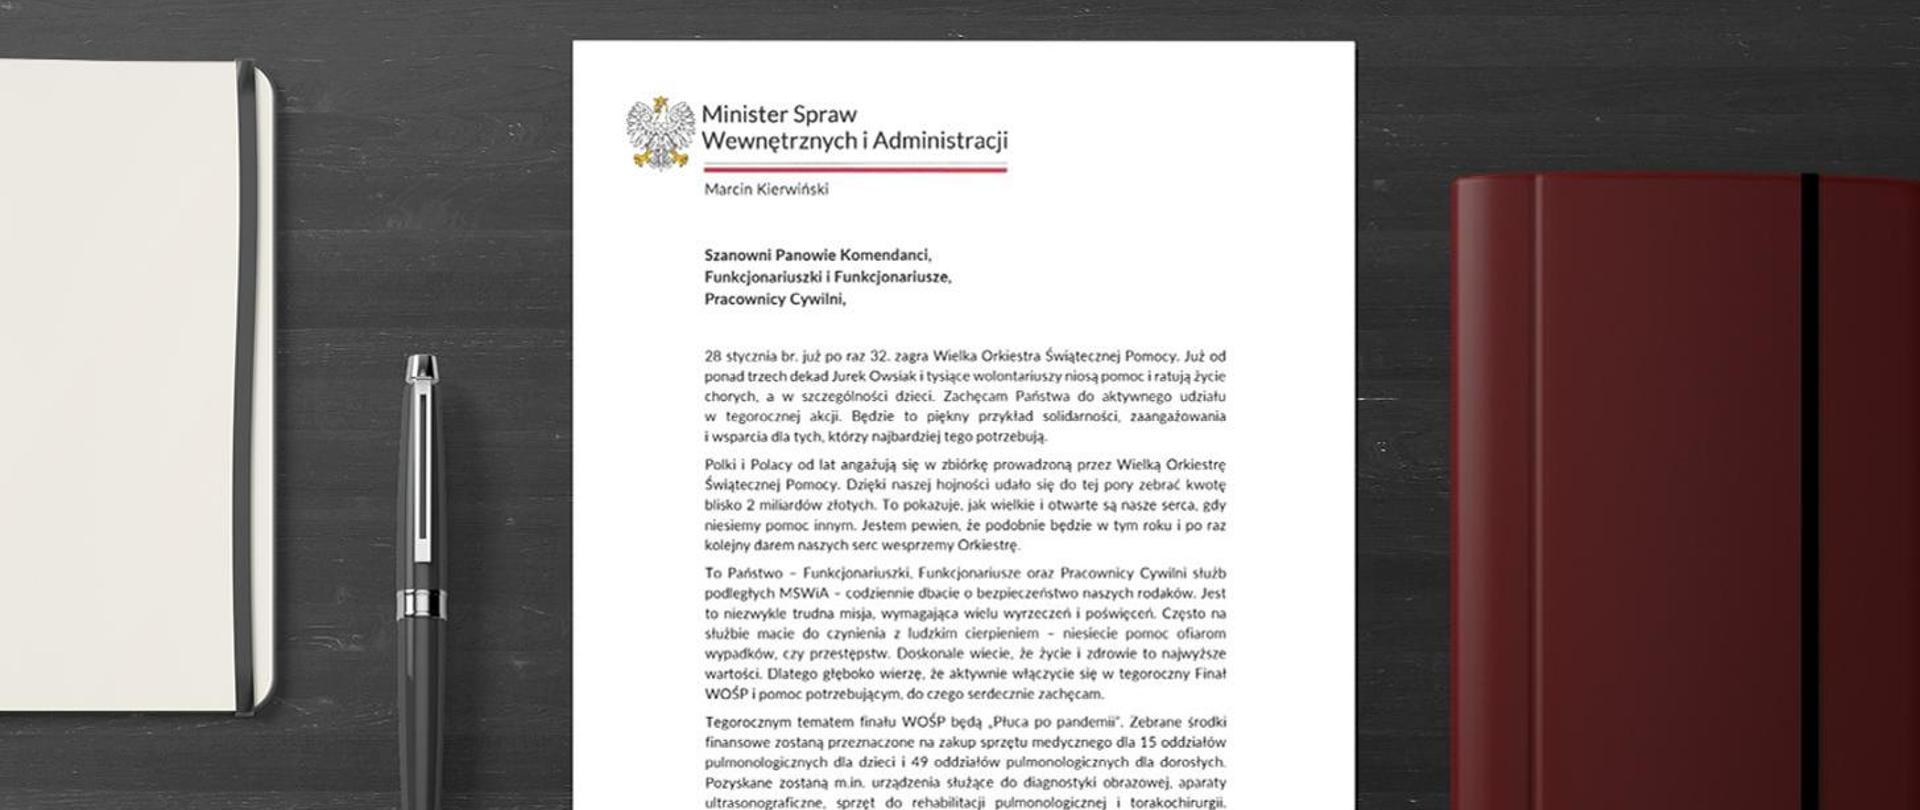 Zdjęcie przedstawia list Ministra MSWiA dotyczący Wielkiej Orkiestry Świątecznej Pomocy